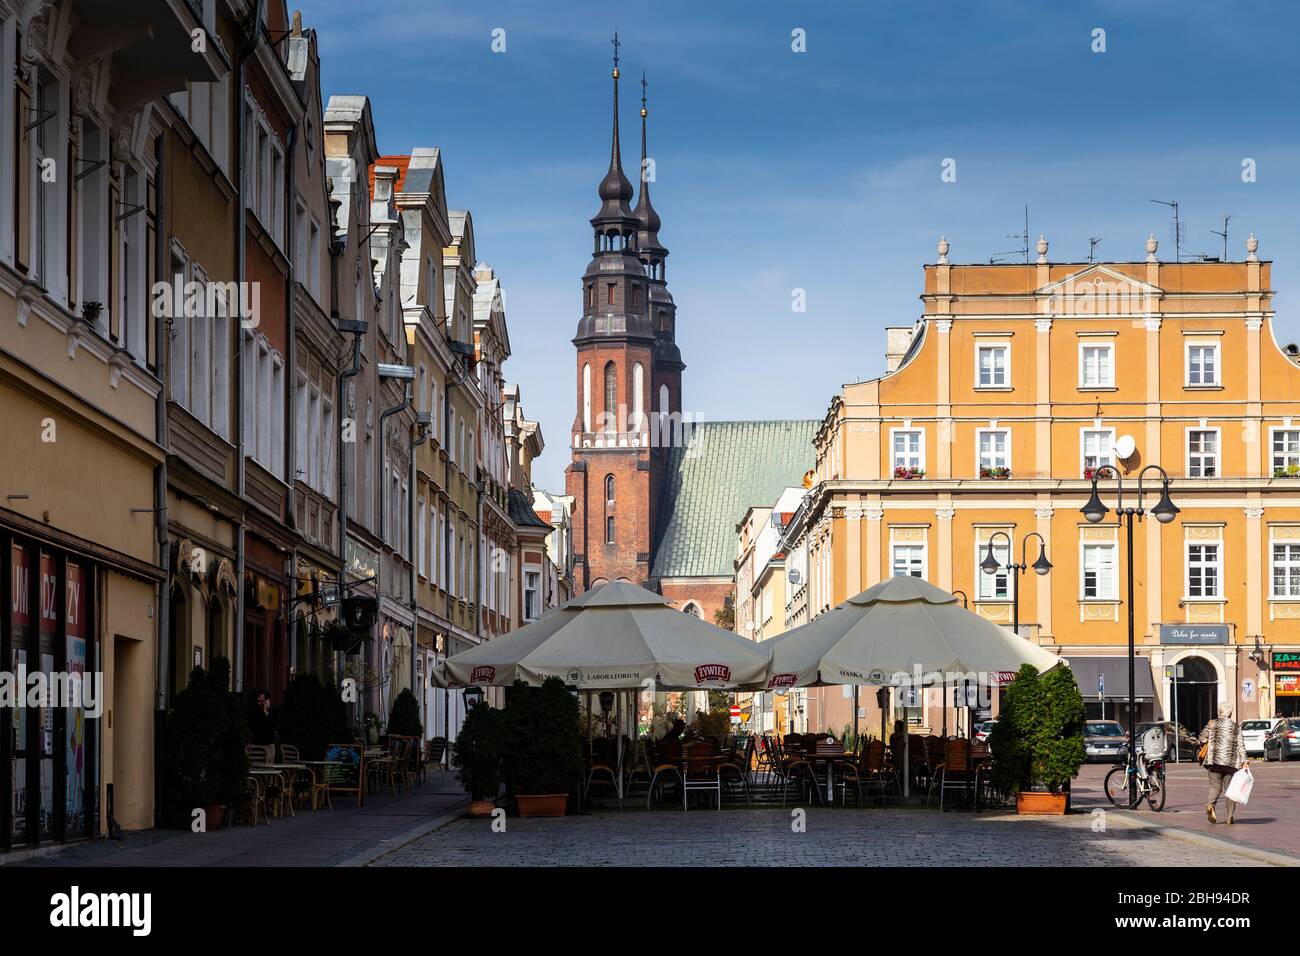 Europa, Polonia, Voivodato di Opole, Opole - mercato principale - uno dei più antichi complessi urbani della Polonia Foto Stock